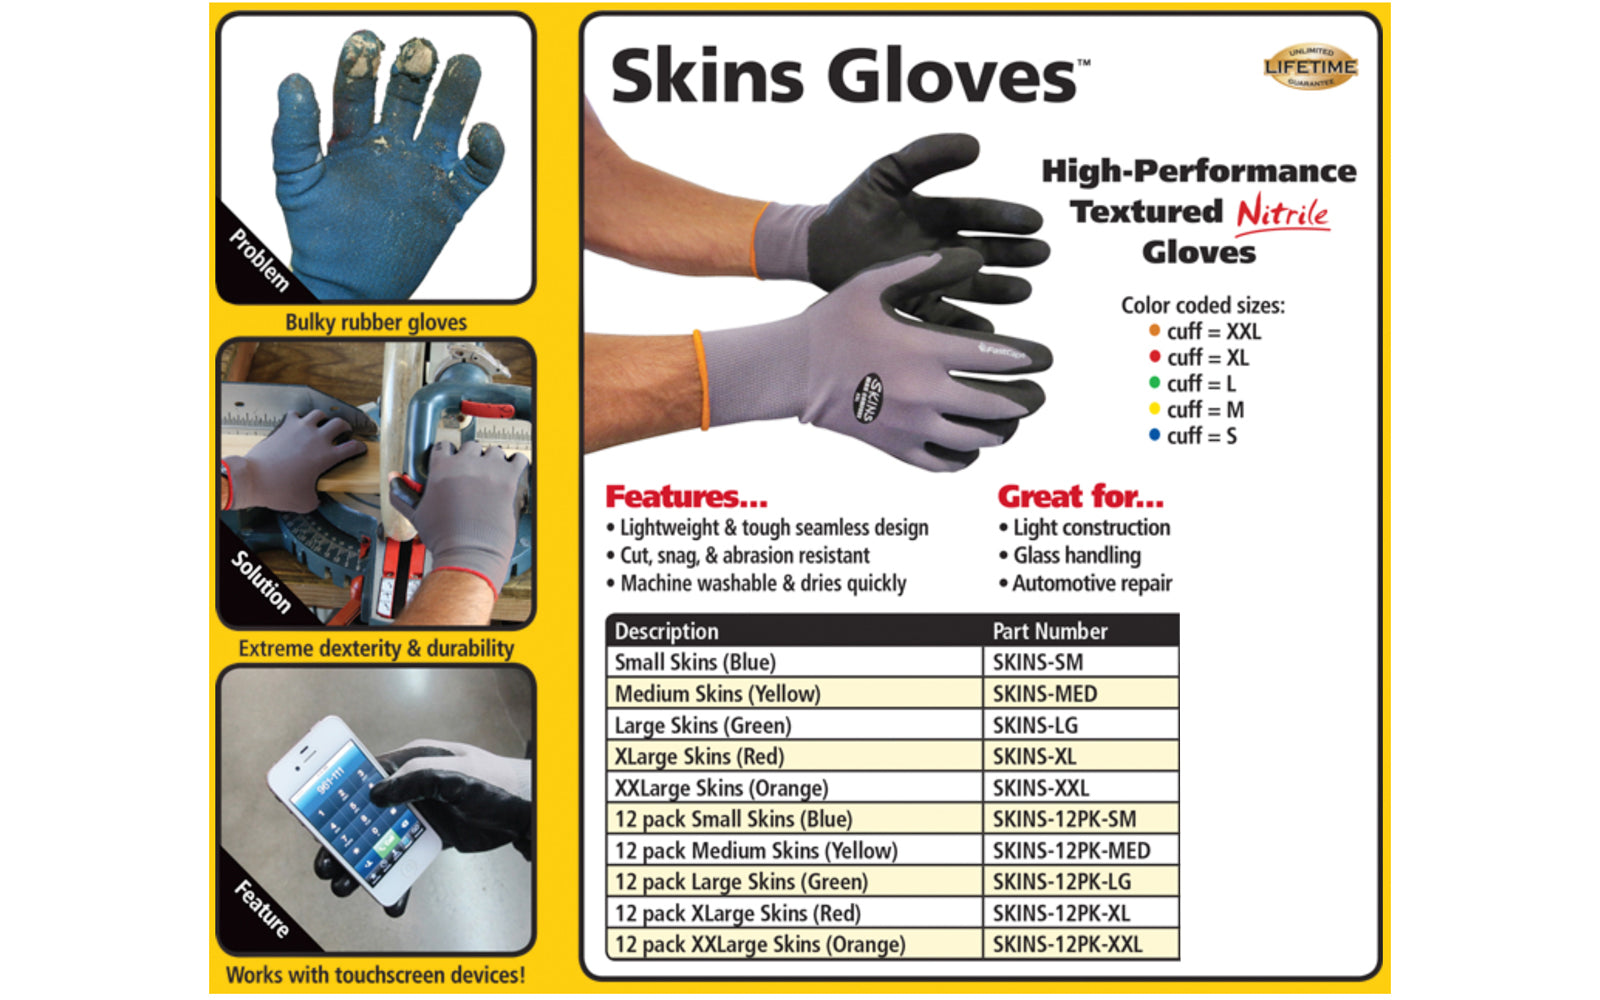 https://hardwickandsons.com/cdn/shop/products/Final_FC_Skins_Gloves_6.jpg?v=1557610938